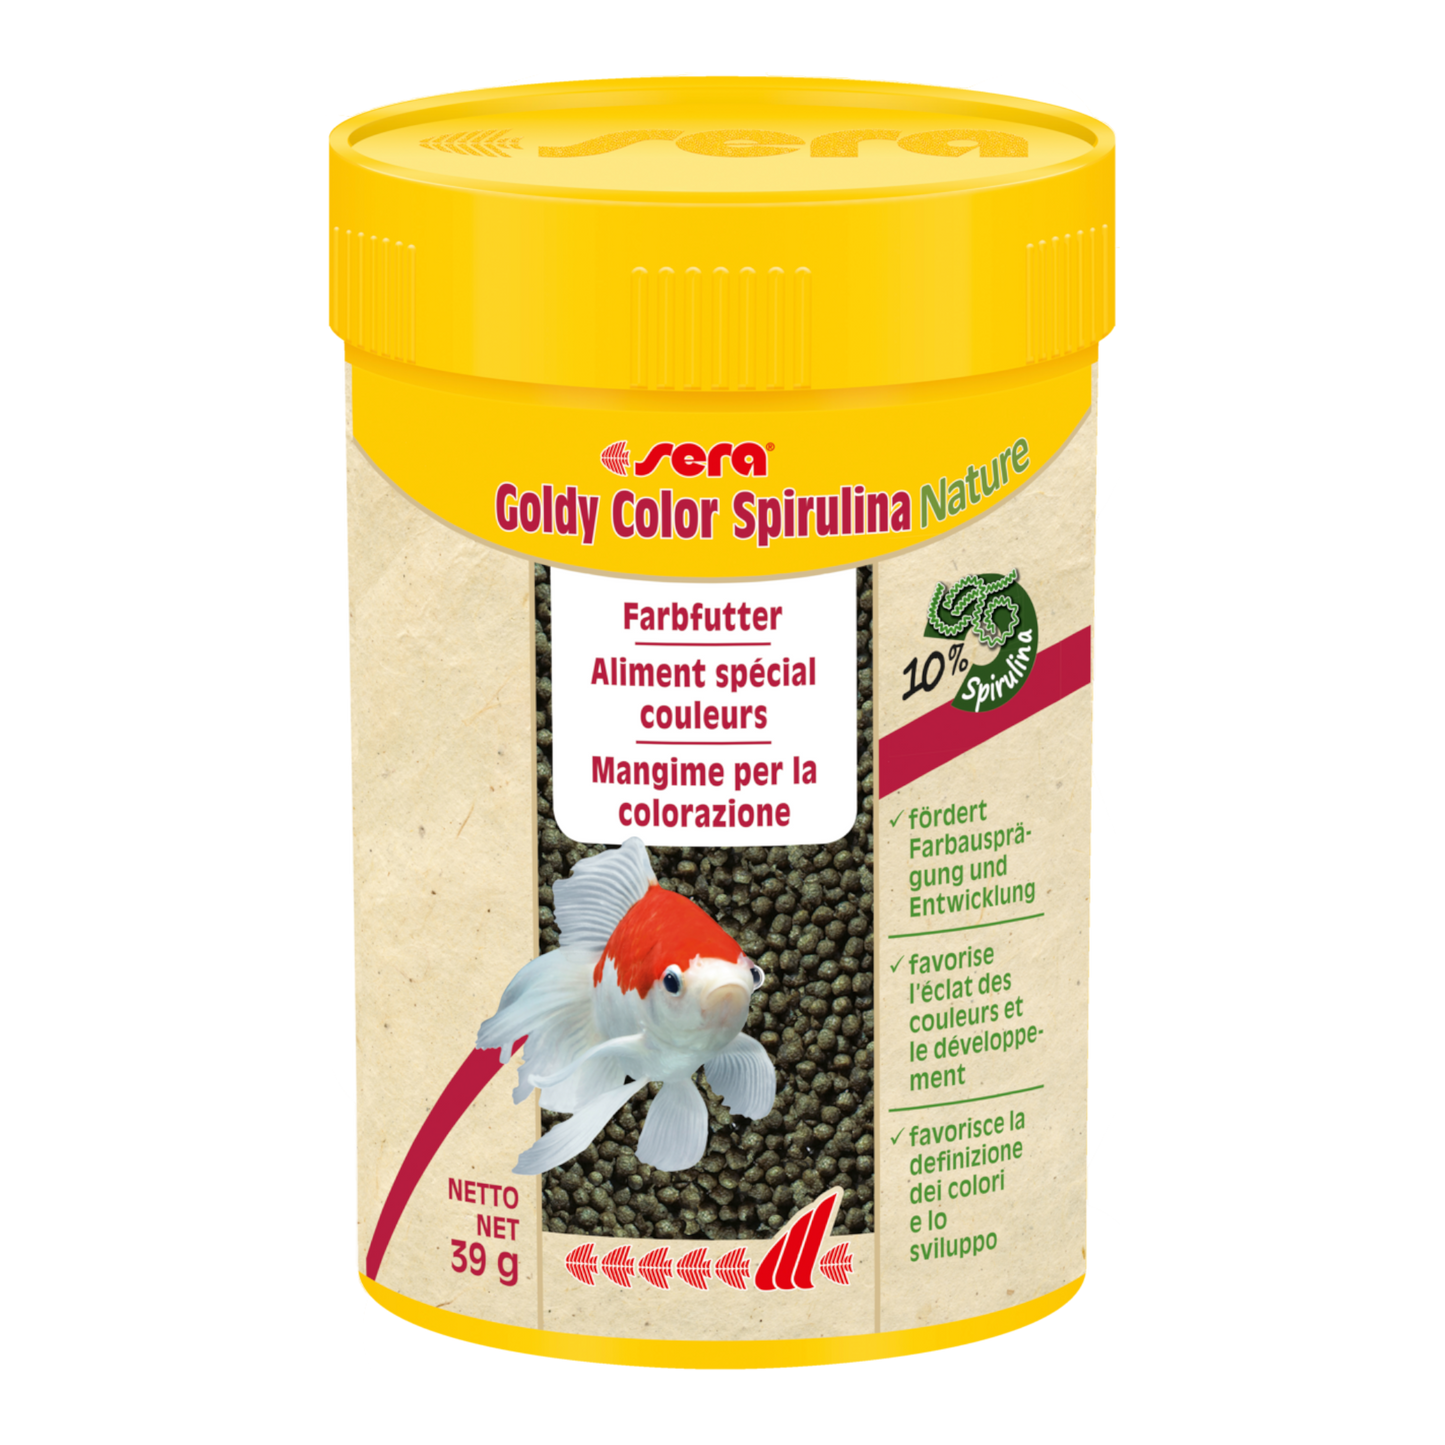 sera Goldy Color Spirulina ist das Farbfutter aus schonend hergestelltem Granulat ohne Farb- und Konservierungsstoffe für größere Goldfische, anspruchsvolle Zuchtformen und andere wählerische Kaltwasserfische.